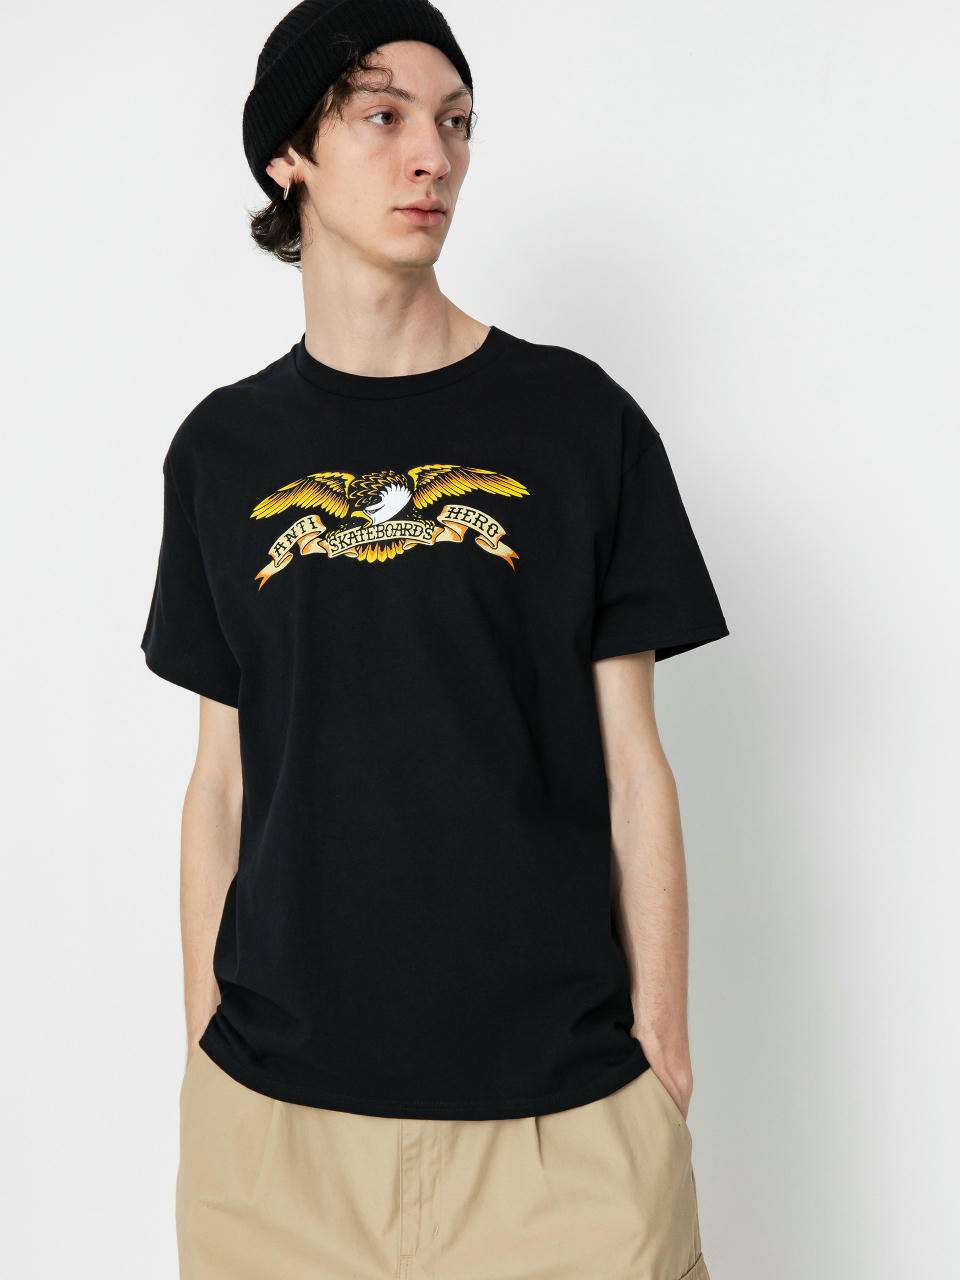 Antihero Eagle T-shirt (black/multi)